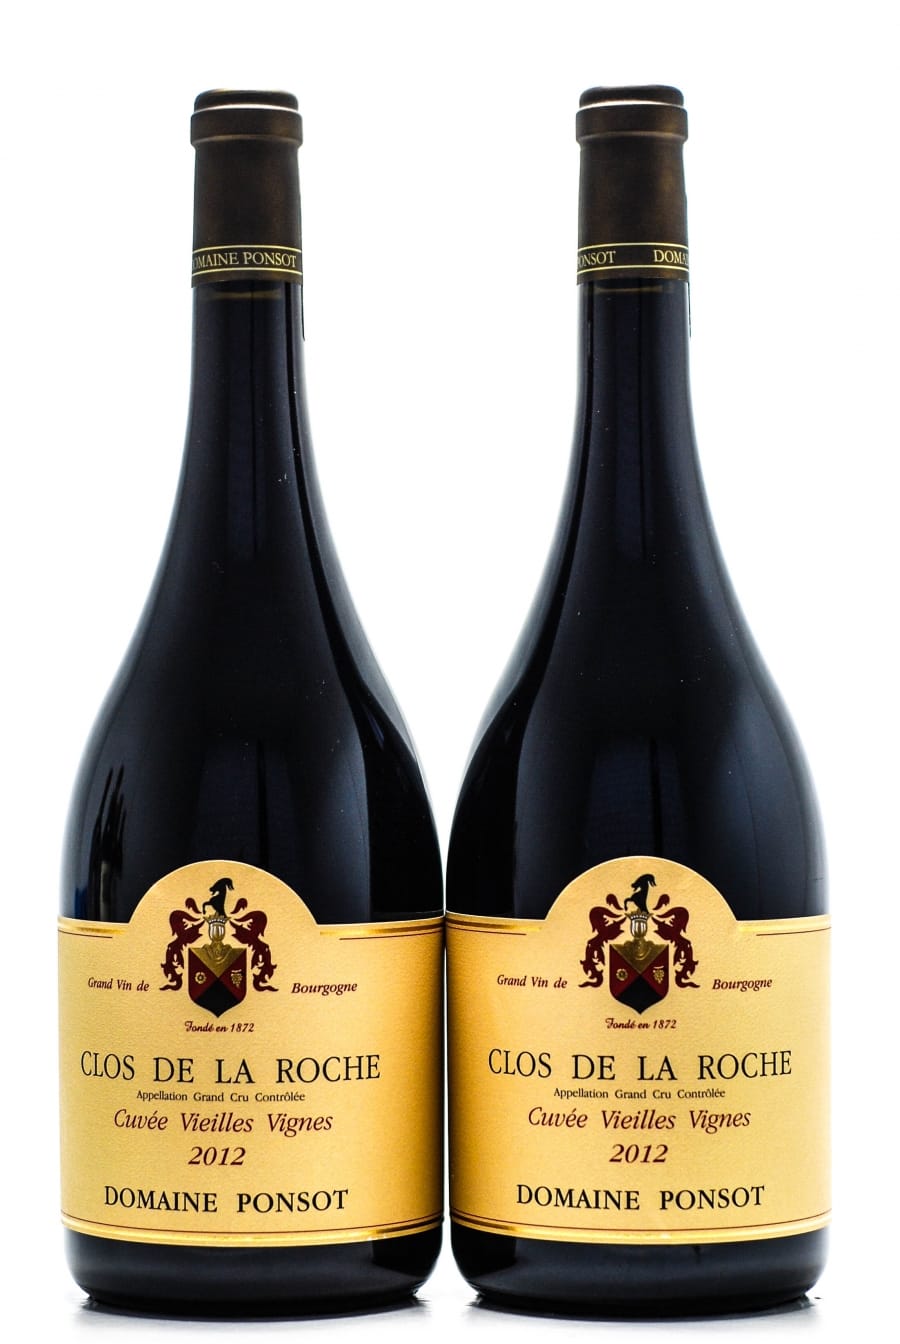 Domaine Ponsot - Clos de la Roche cuvee Vieille Vignes 2012